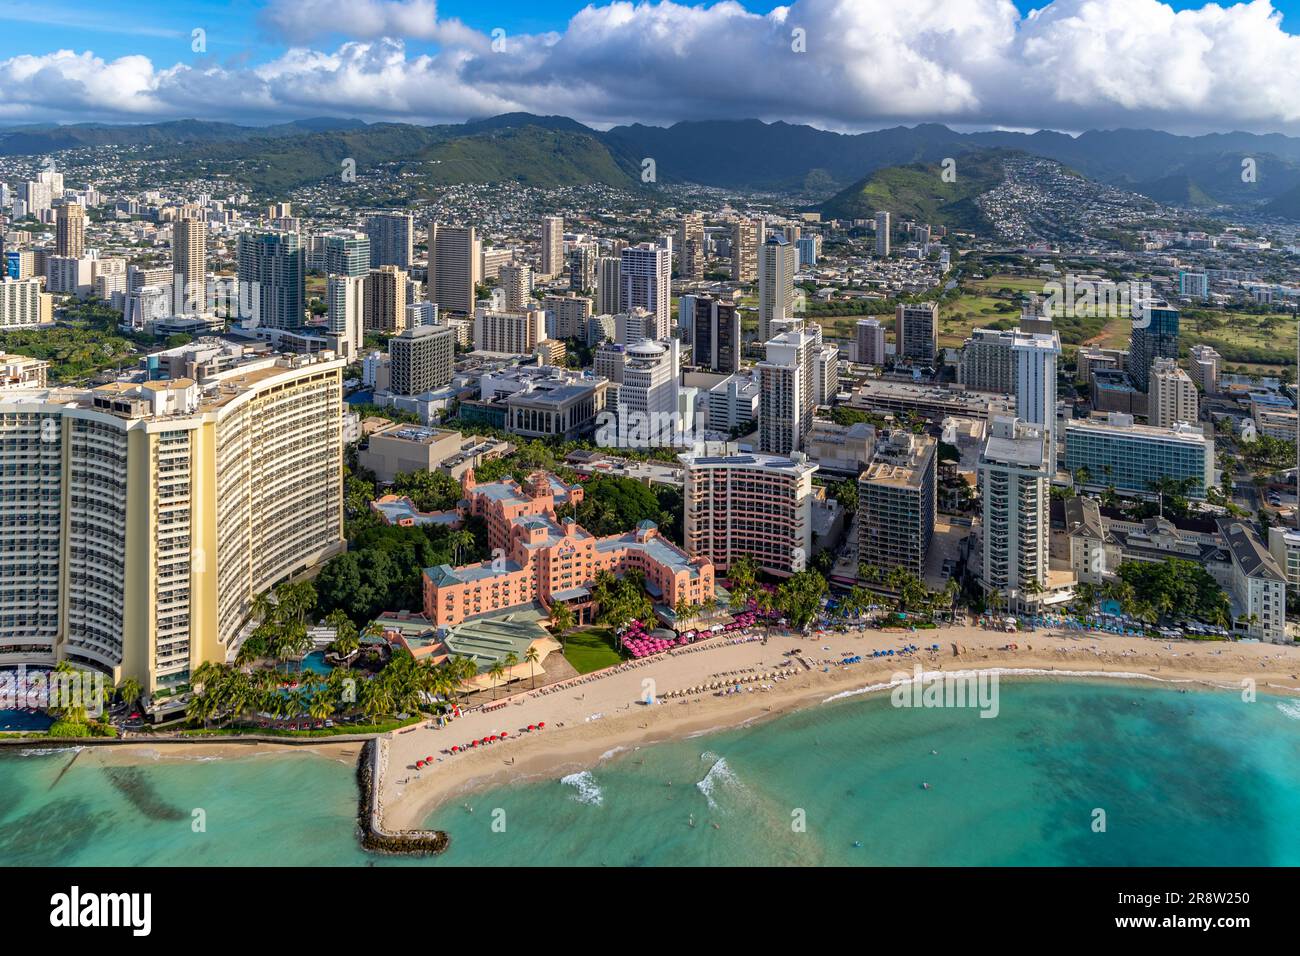 Royal Hawaiian Hotel, Waikiki, Honolulu, Oahu, Hawaii Stock Photo